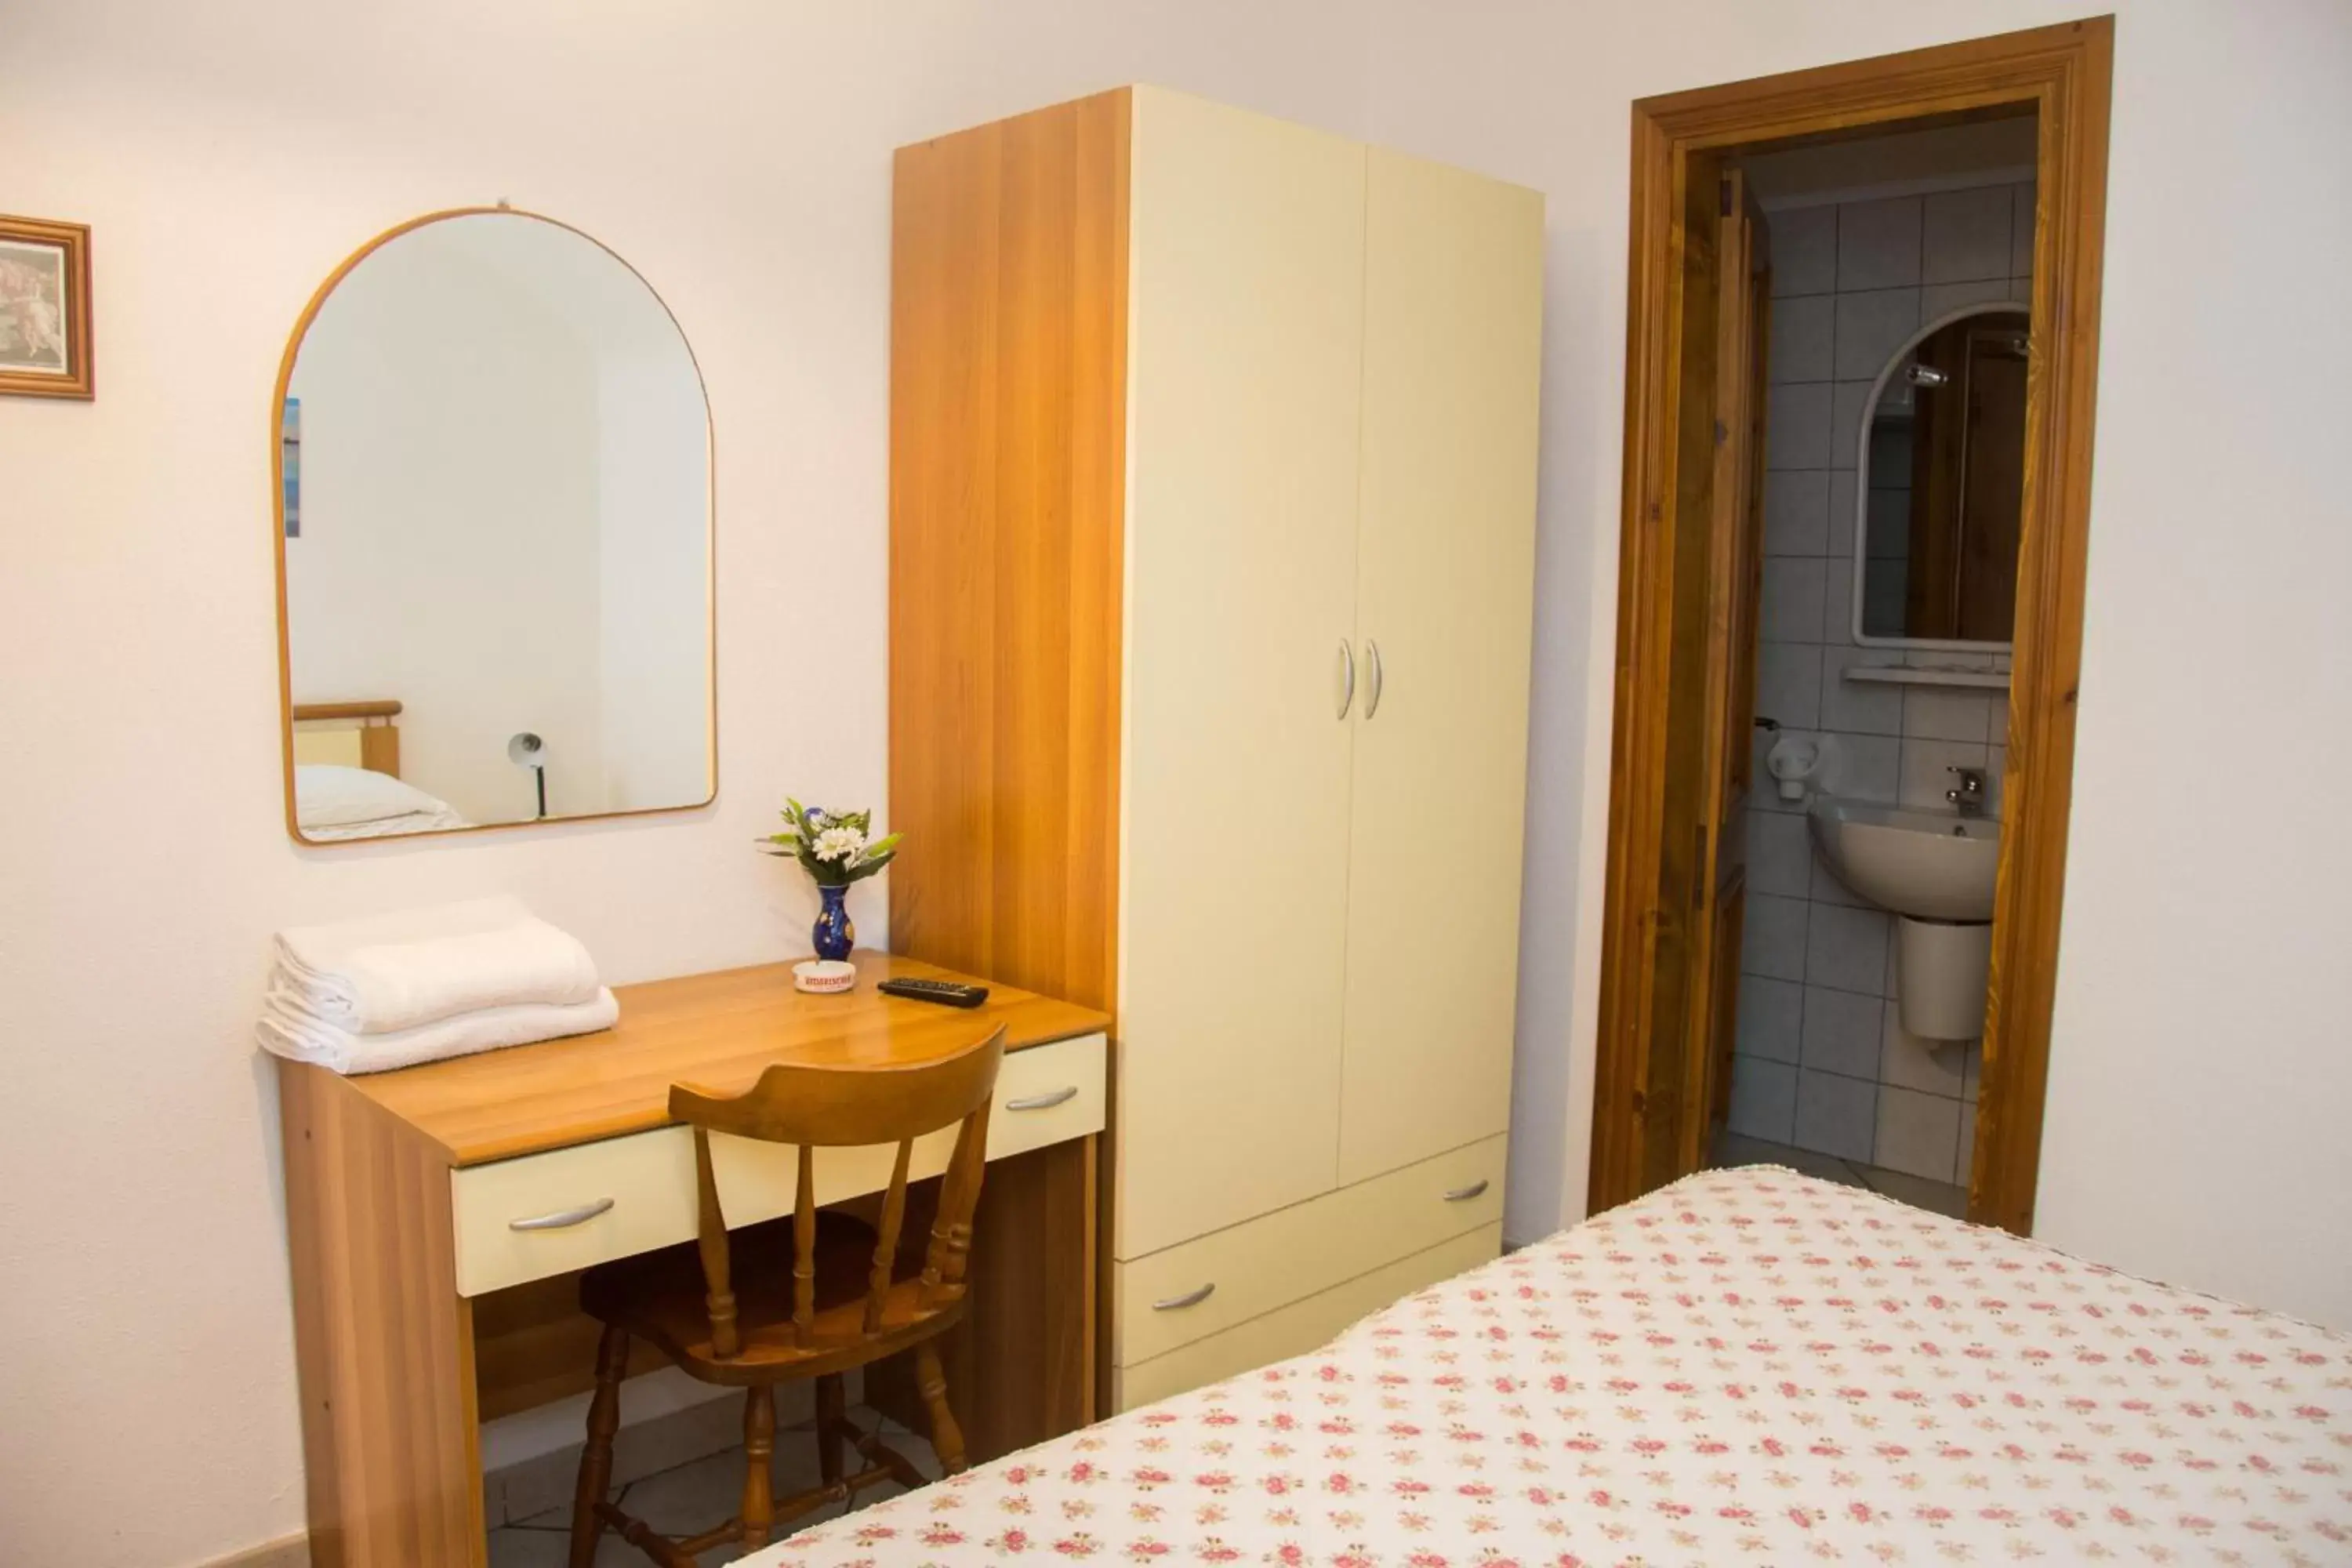 Bedroom, Bathroom in Hotel Villa Mena